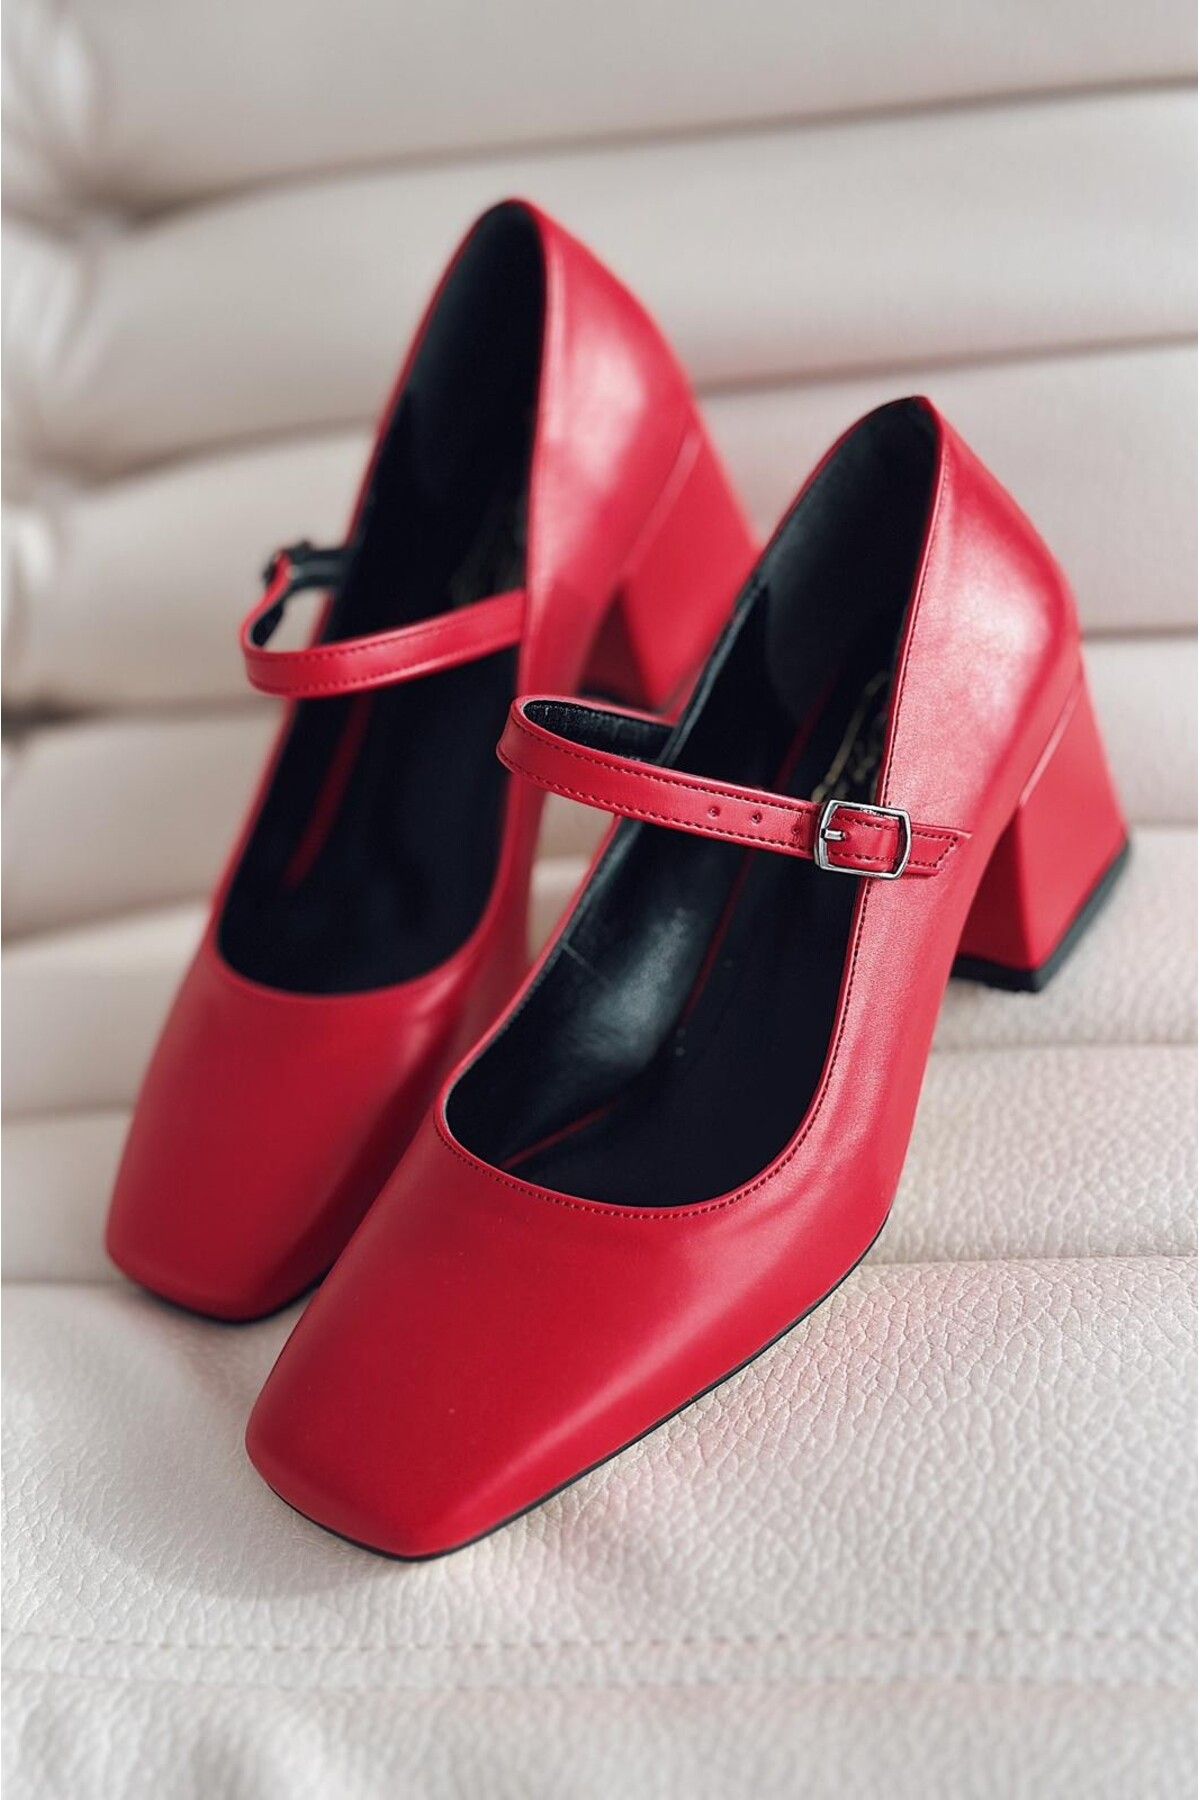 I Love Shoes Monse Mat Deri Mary Jane Kadın Topuklu Ayakkabı Kırmızı